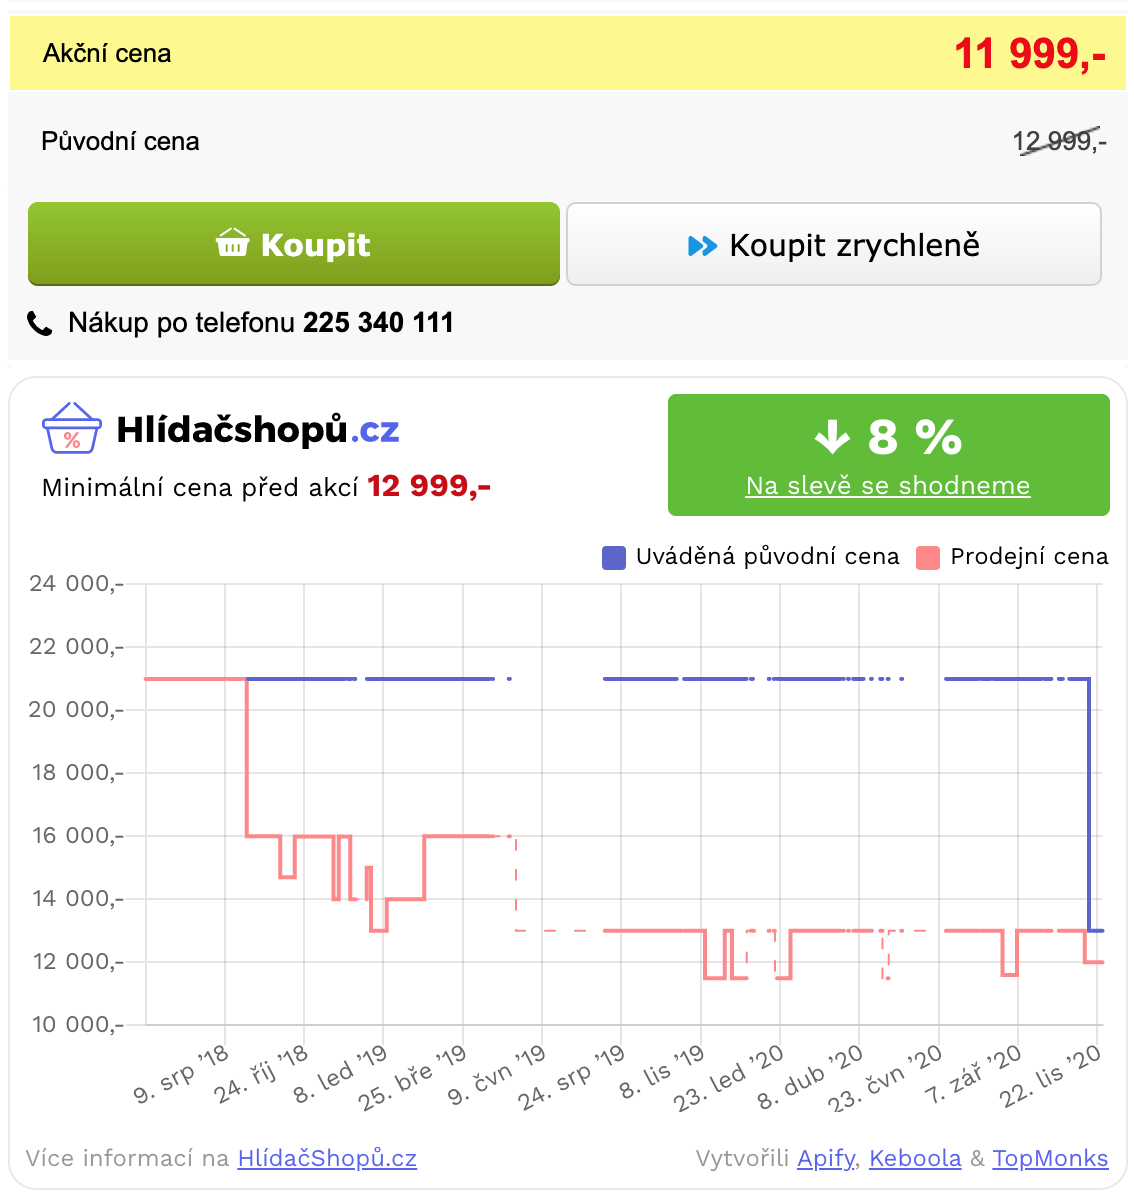 snímek obrazovky cenovky (z 12999 Kč na 11999 Kč) na alza.cz spolu s grafem Hlídačshopů